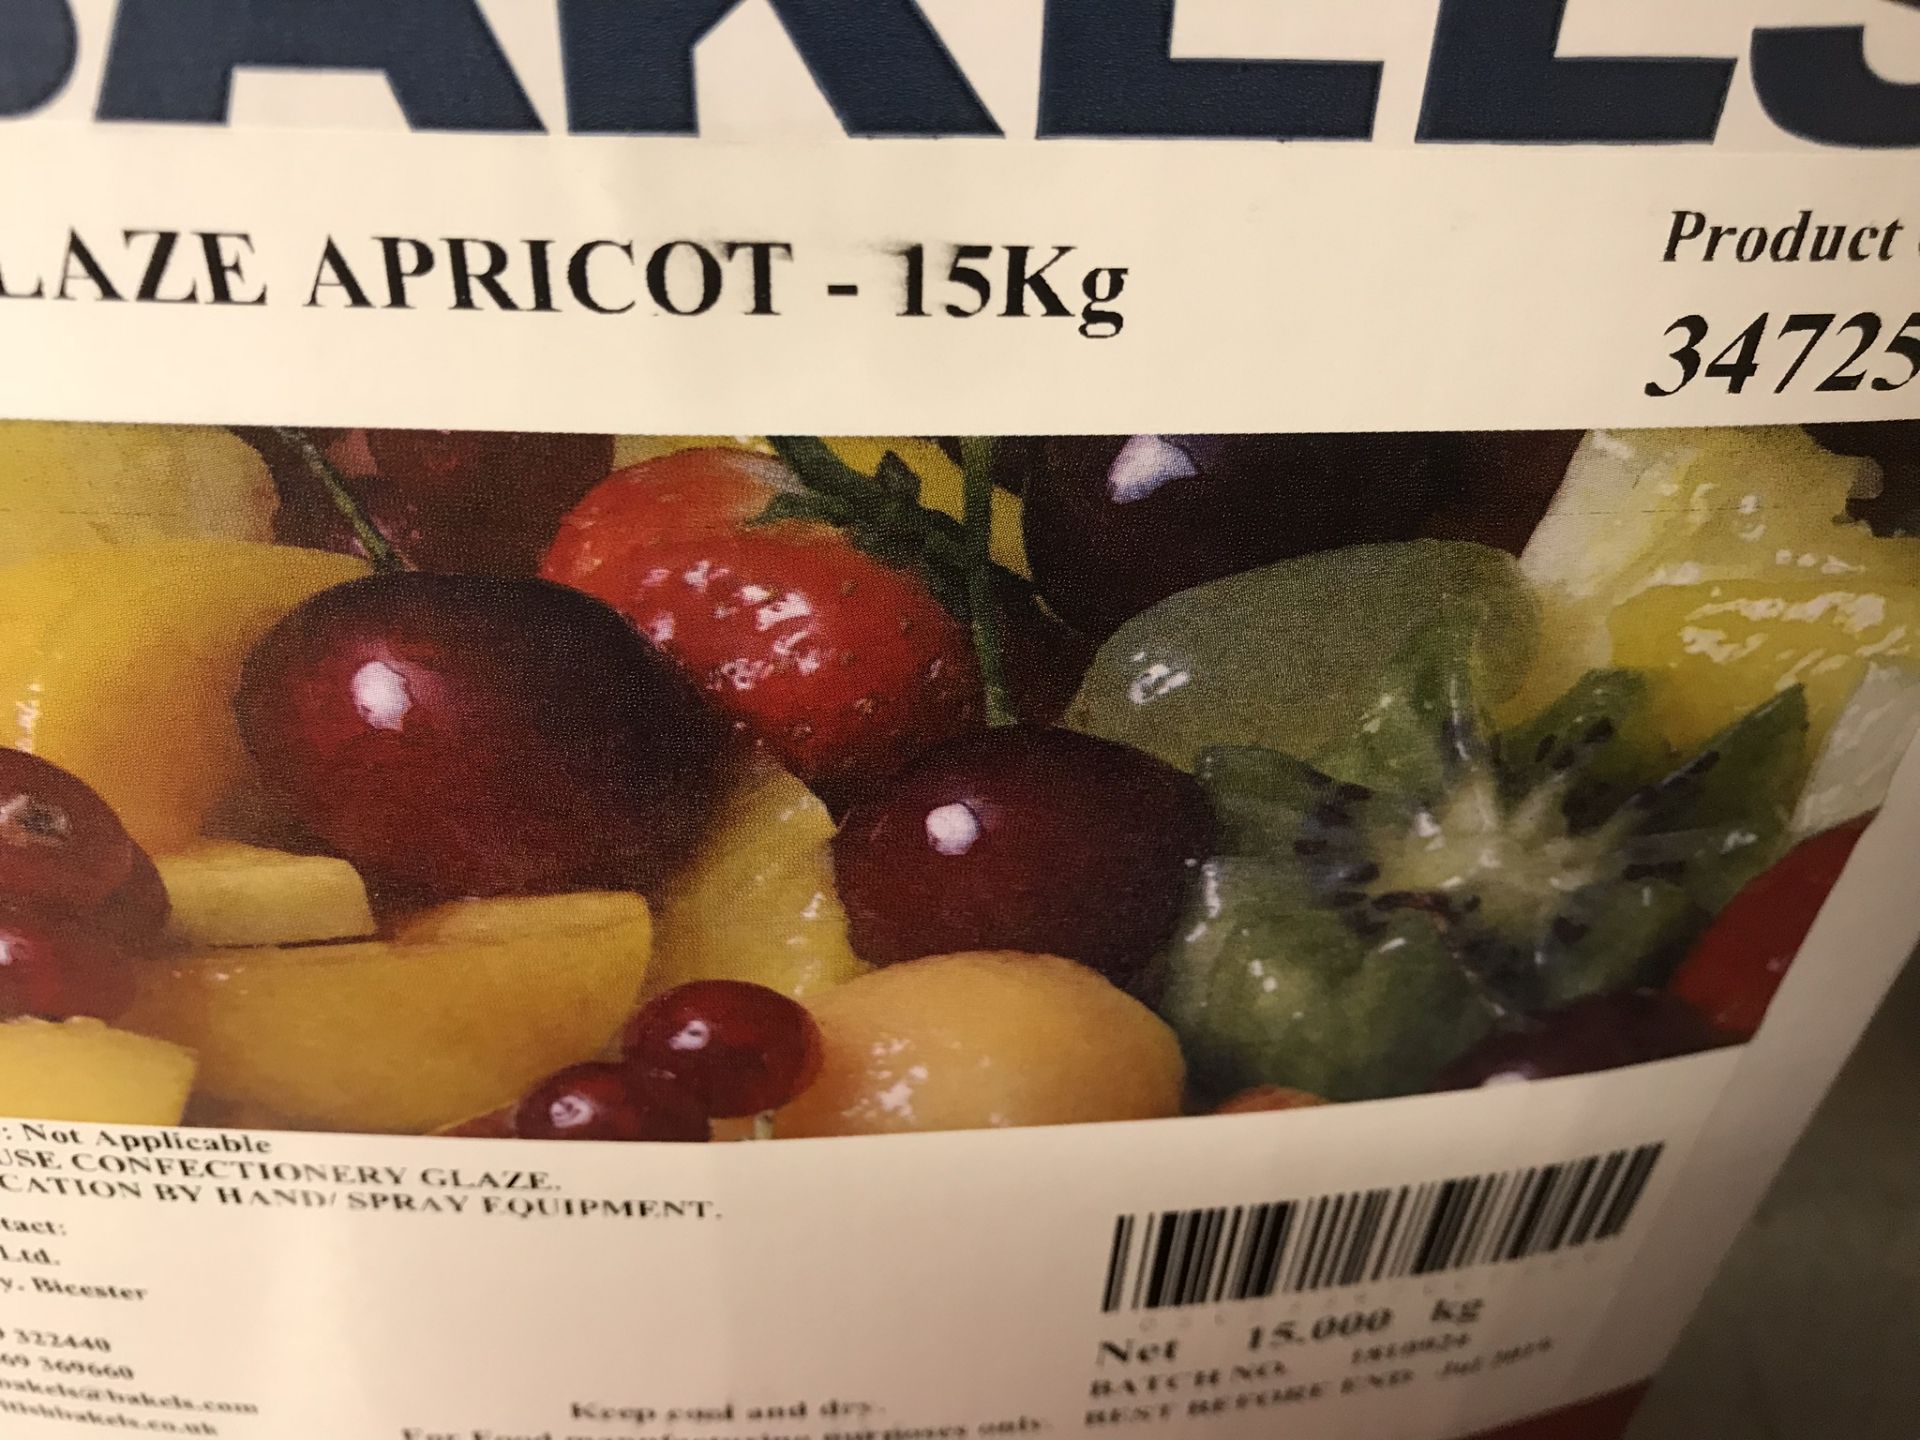 3 x Bakels Inst Superglaze Apricot - 15kg - Product Code: 347250 - 07/2019 - Bild 4 aus 5